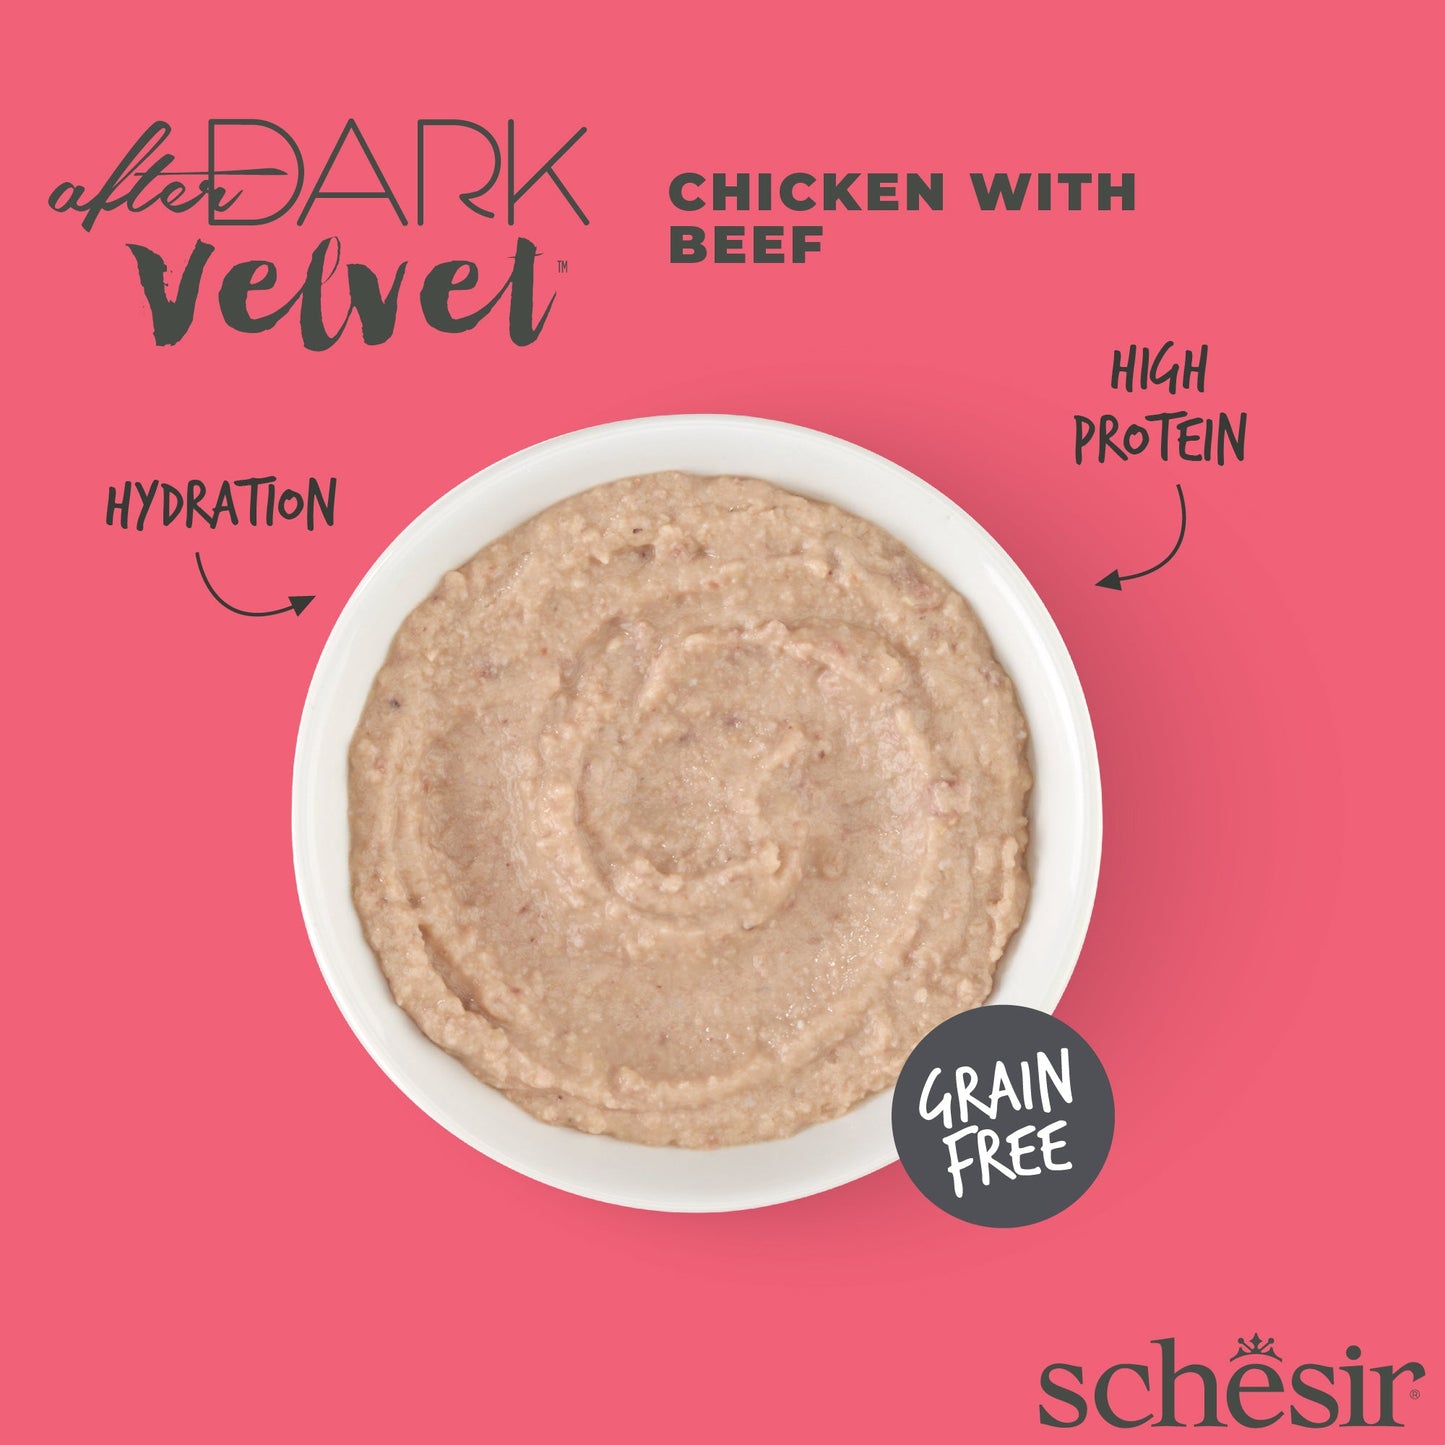 (Carton of 12) Schesir After Dark Velvet Mousse - Chicken with Beef, 80g